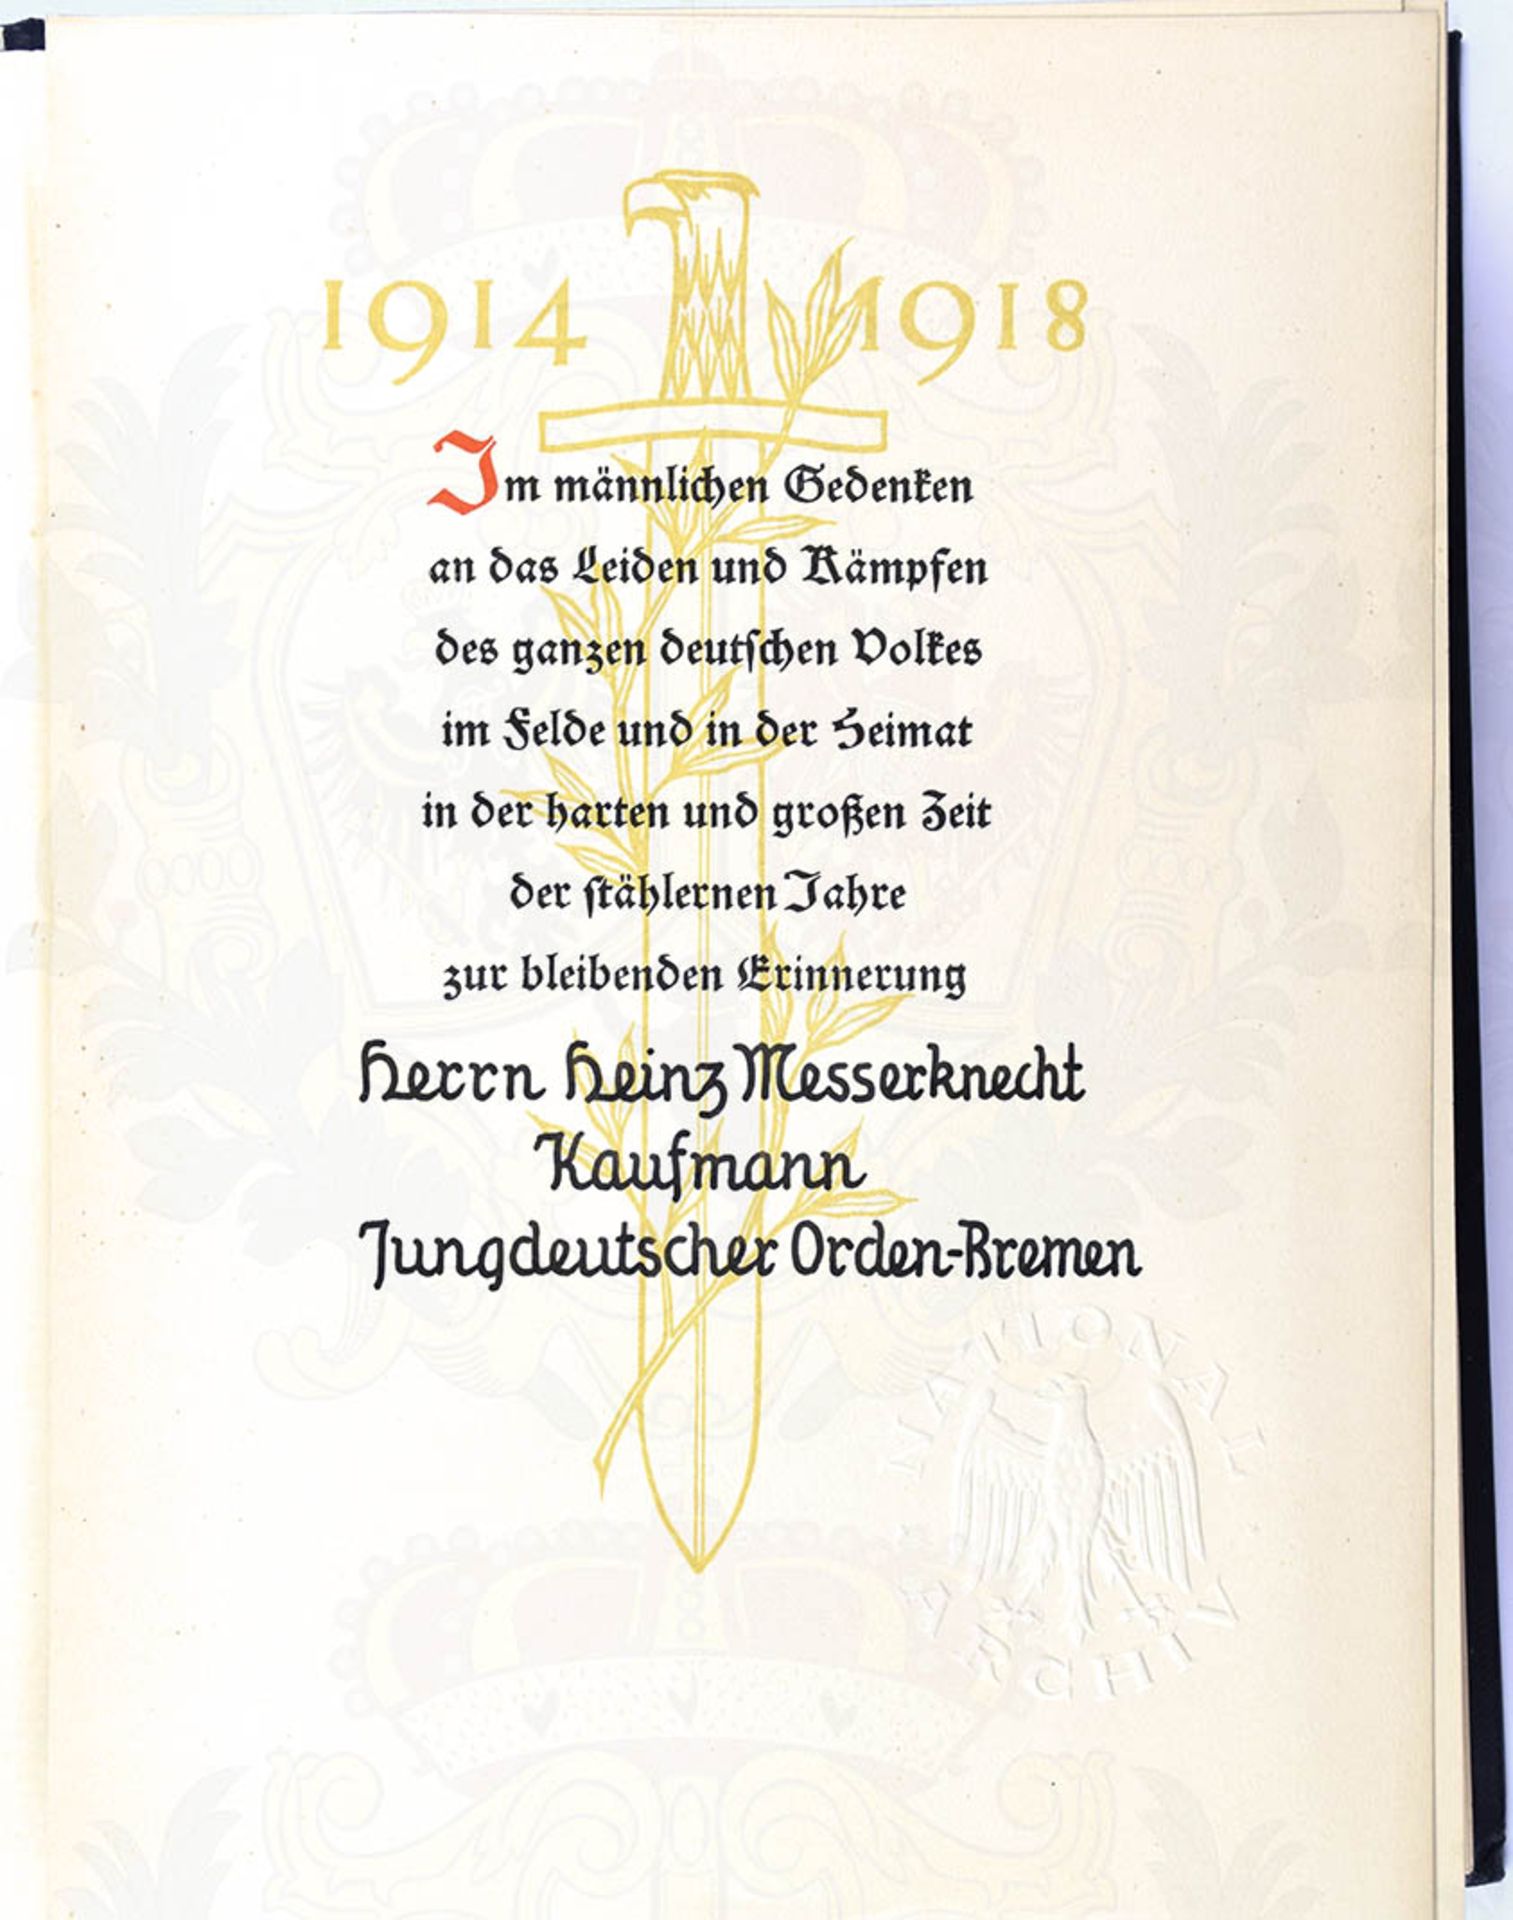 DIE STÄHLERNEN JAHRE - DAS DEUTSCHE BUCH VOM WELTKRIEG, National-Archiv, München 1929, 552 S., - Bild 3 aus 3